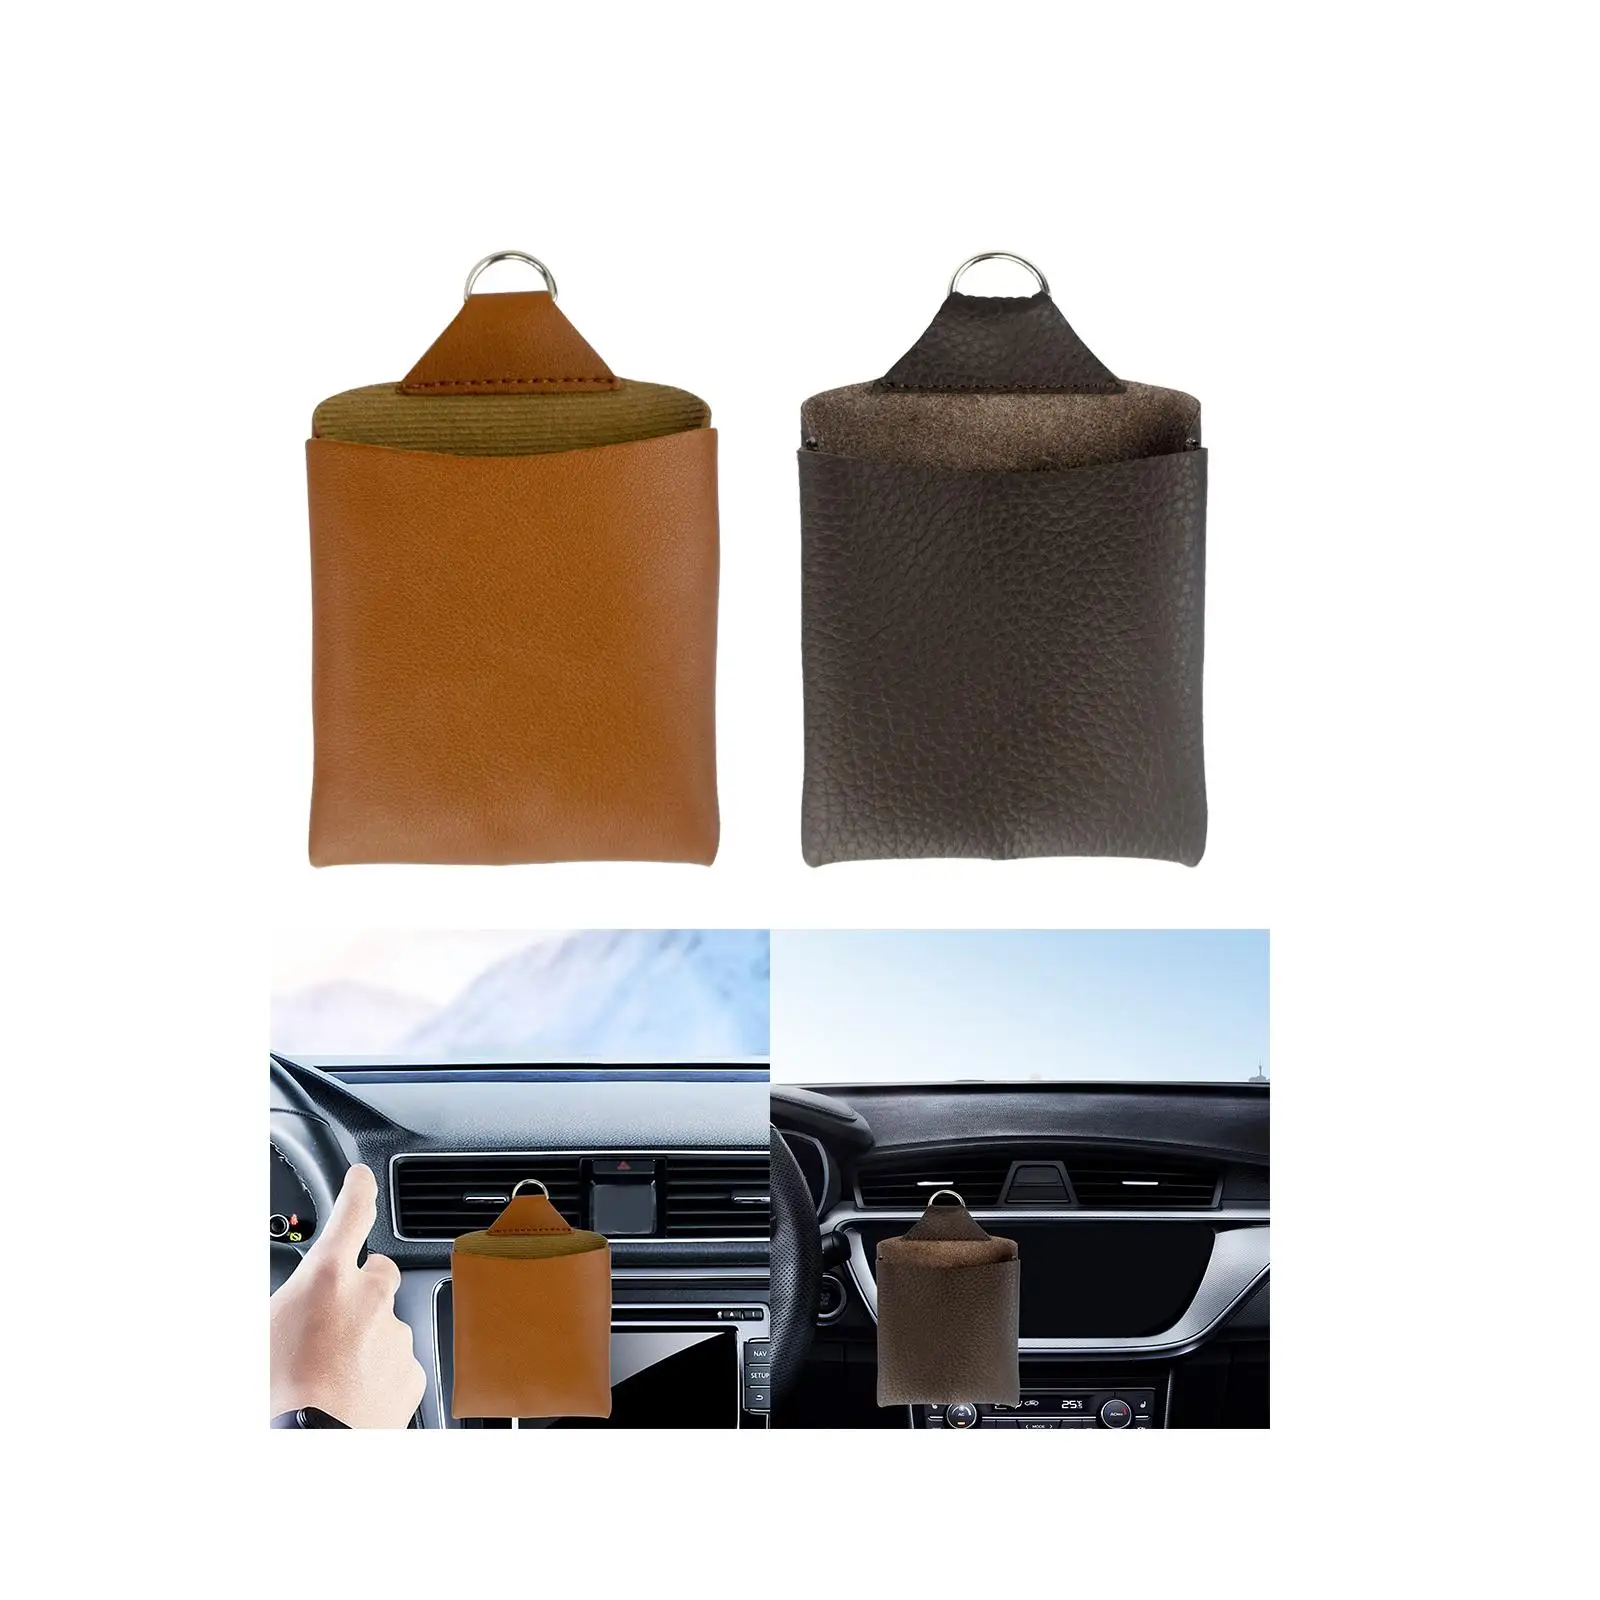 

Автомобильный Органайзер с вентиляционным отверстием, подвесная сумка, контейнер для ключей, карт, мелких предметов